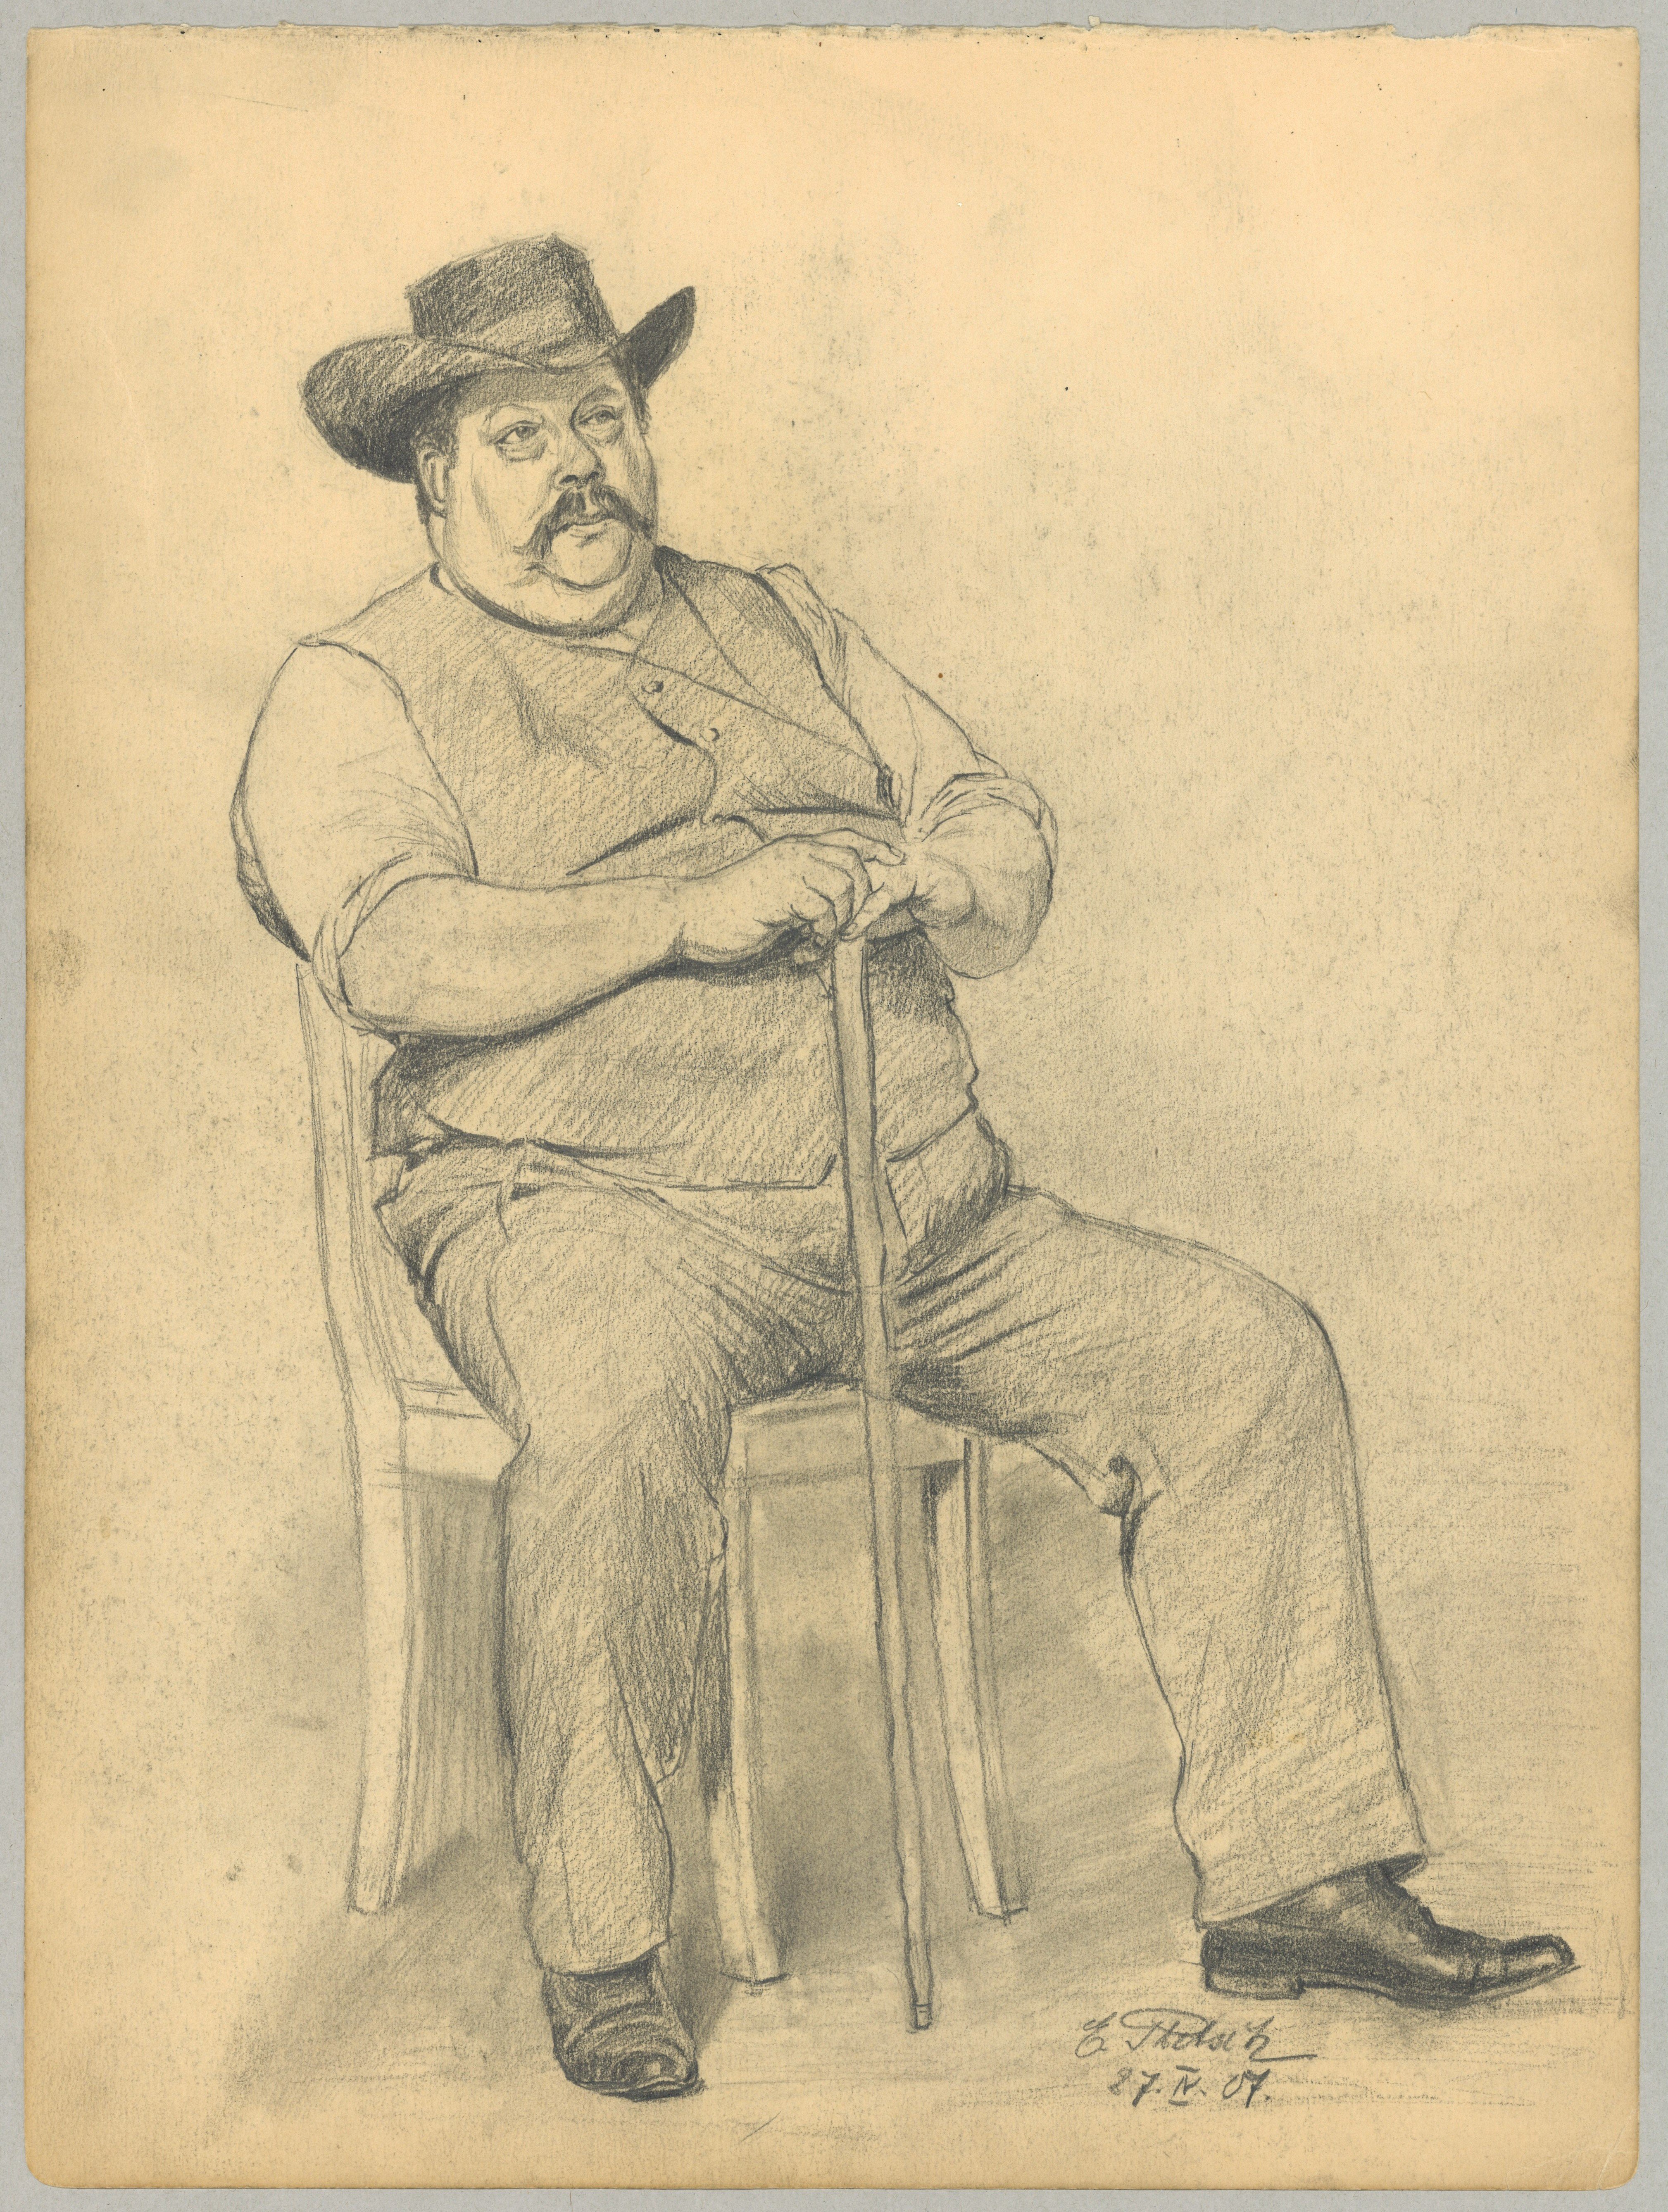 Unbekannter sitzender Mann mit Stock und Hut (Landesgeschichtliche Vereinigung für die Mark Brandenburg e.V., Archiv CC BY)